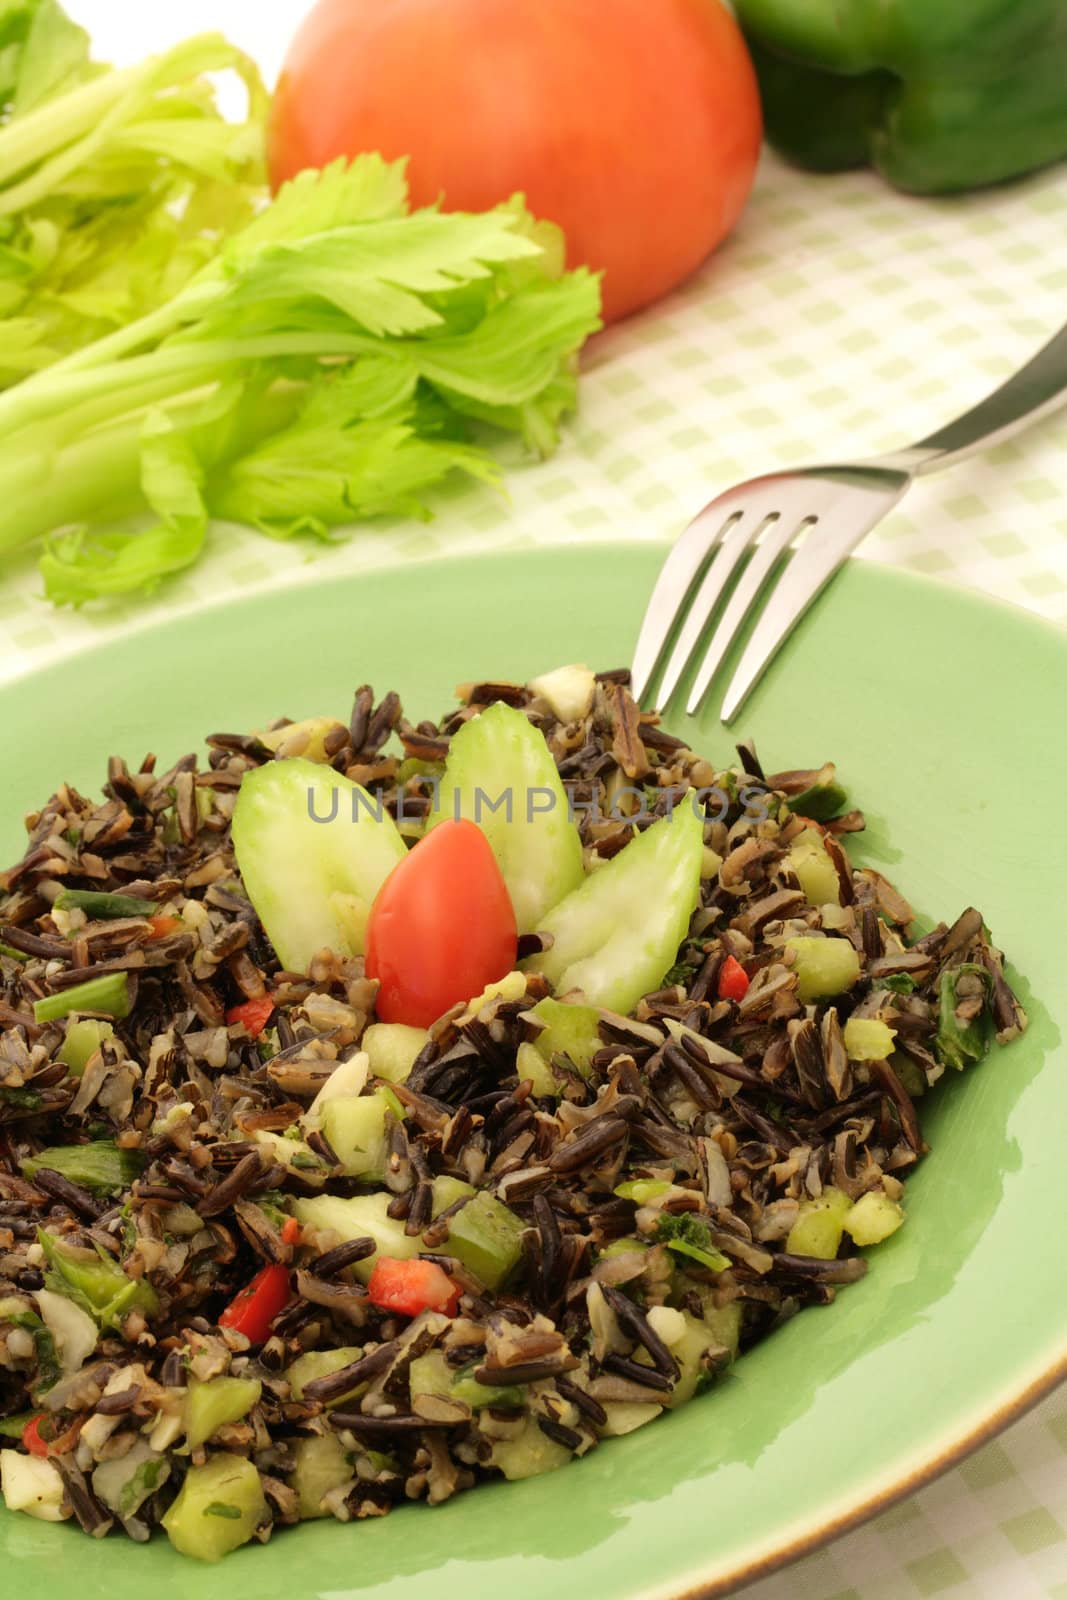 Wild rice salad by Hbak